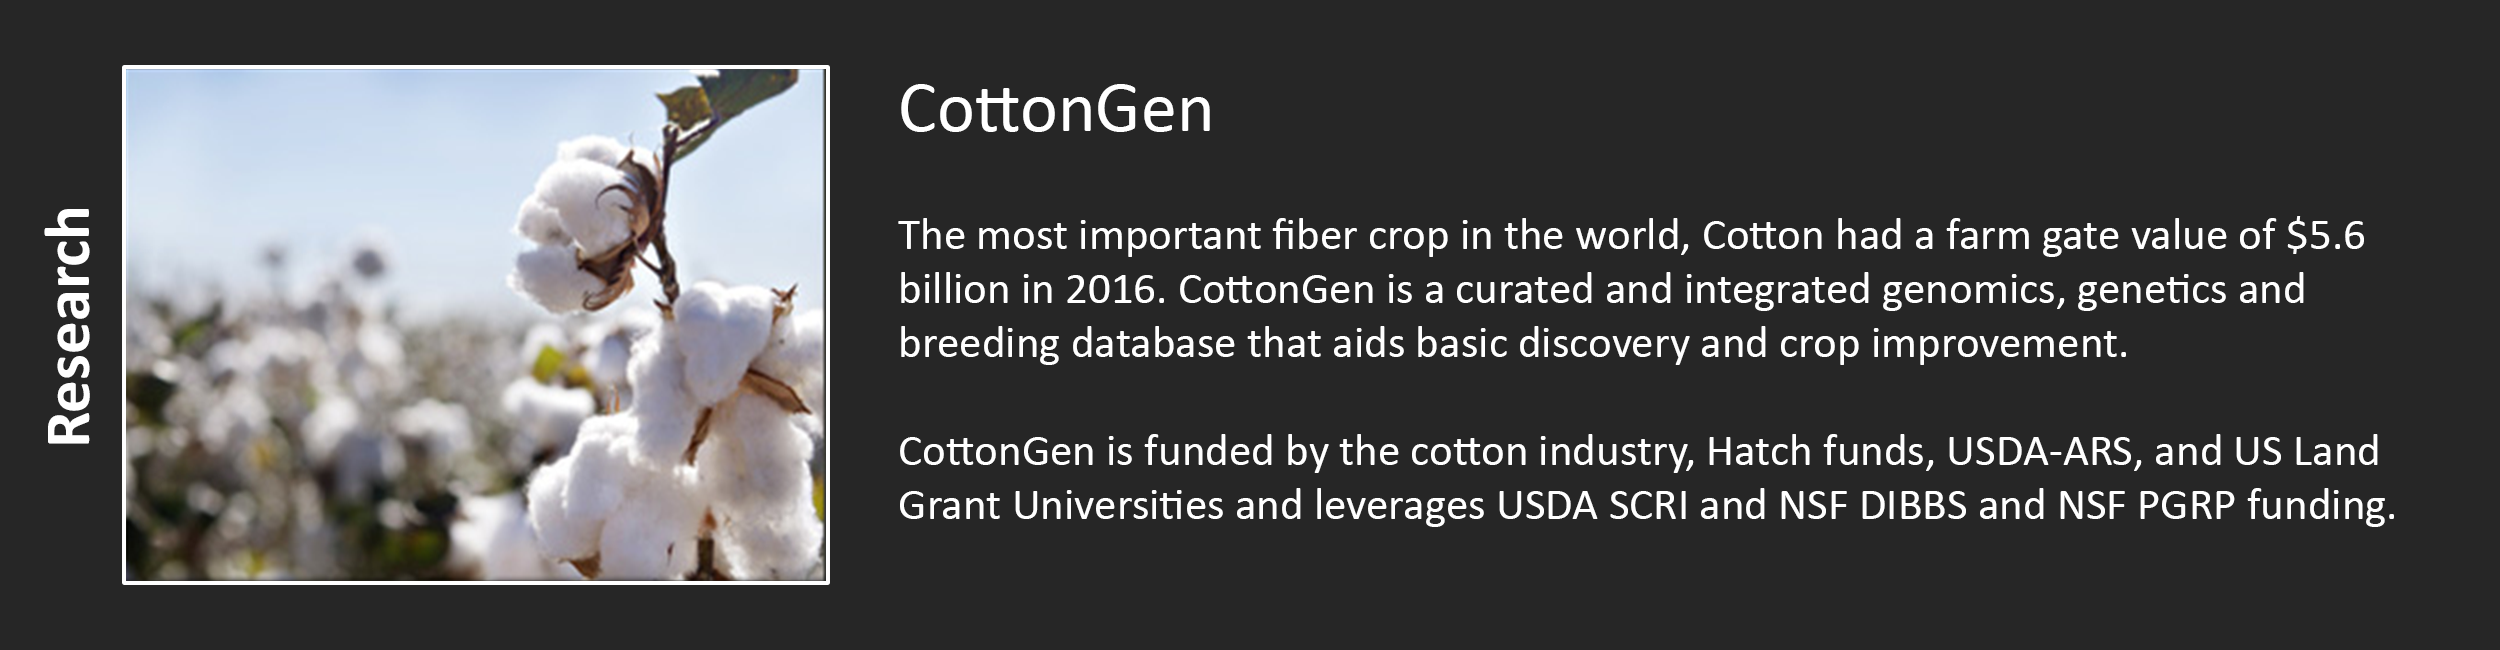 CottonGen